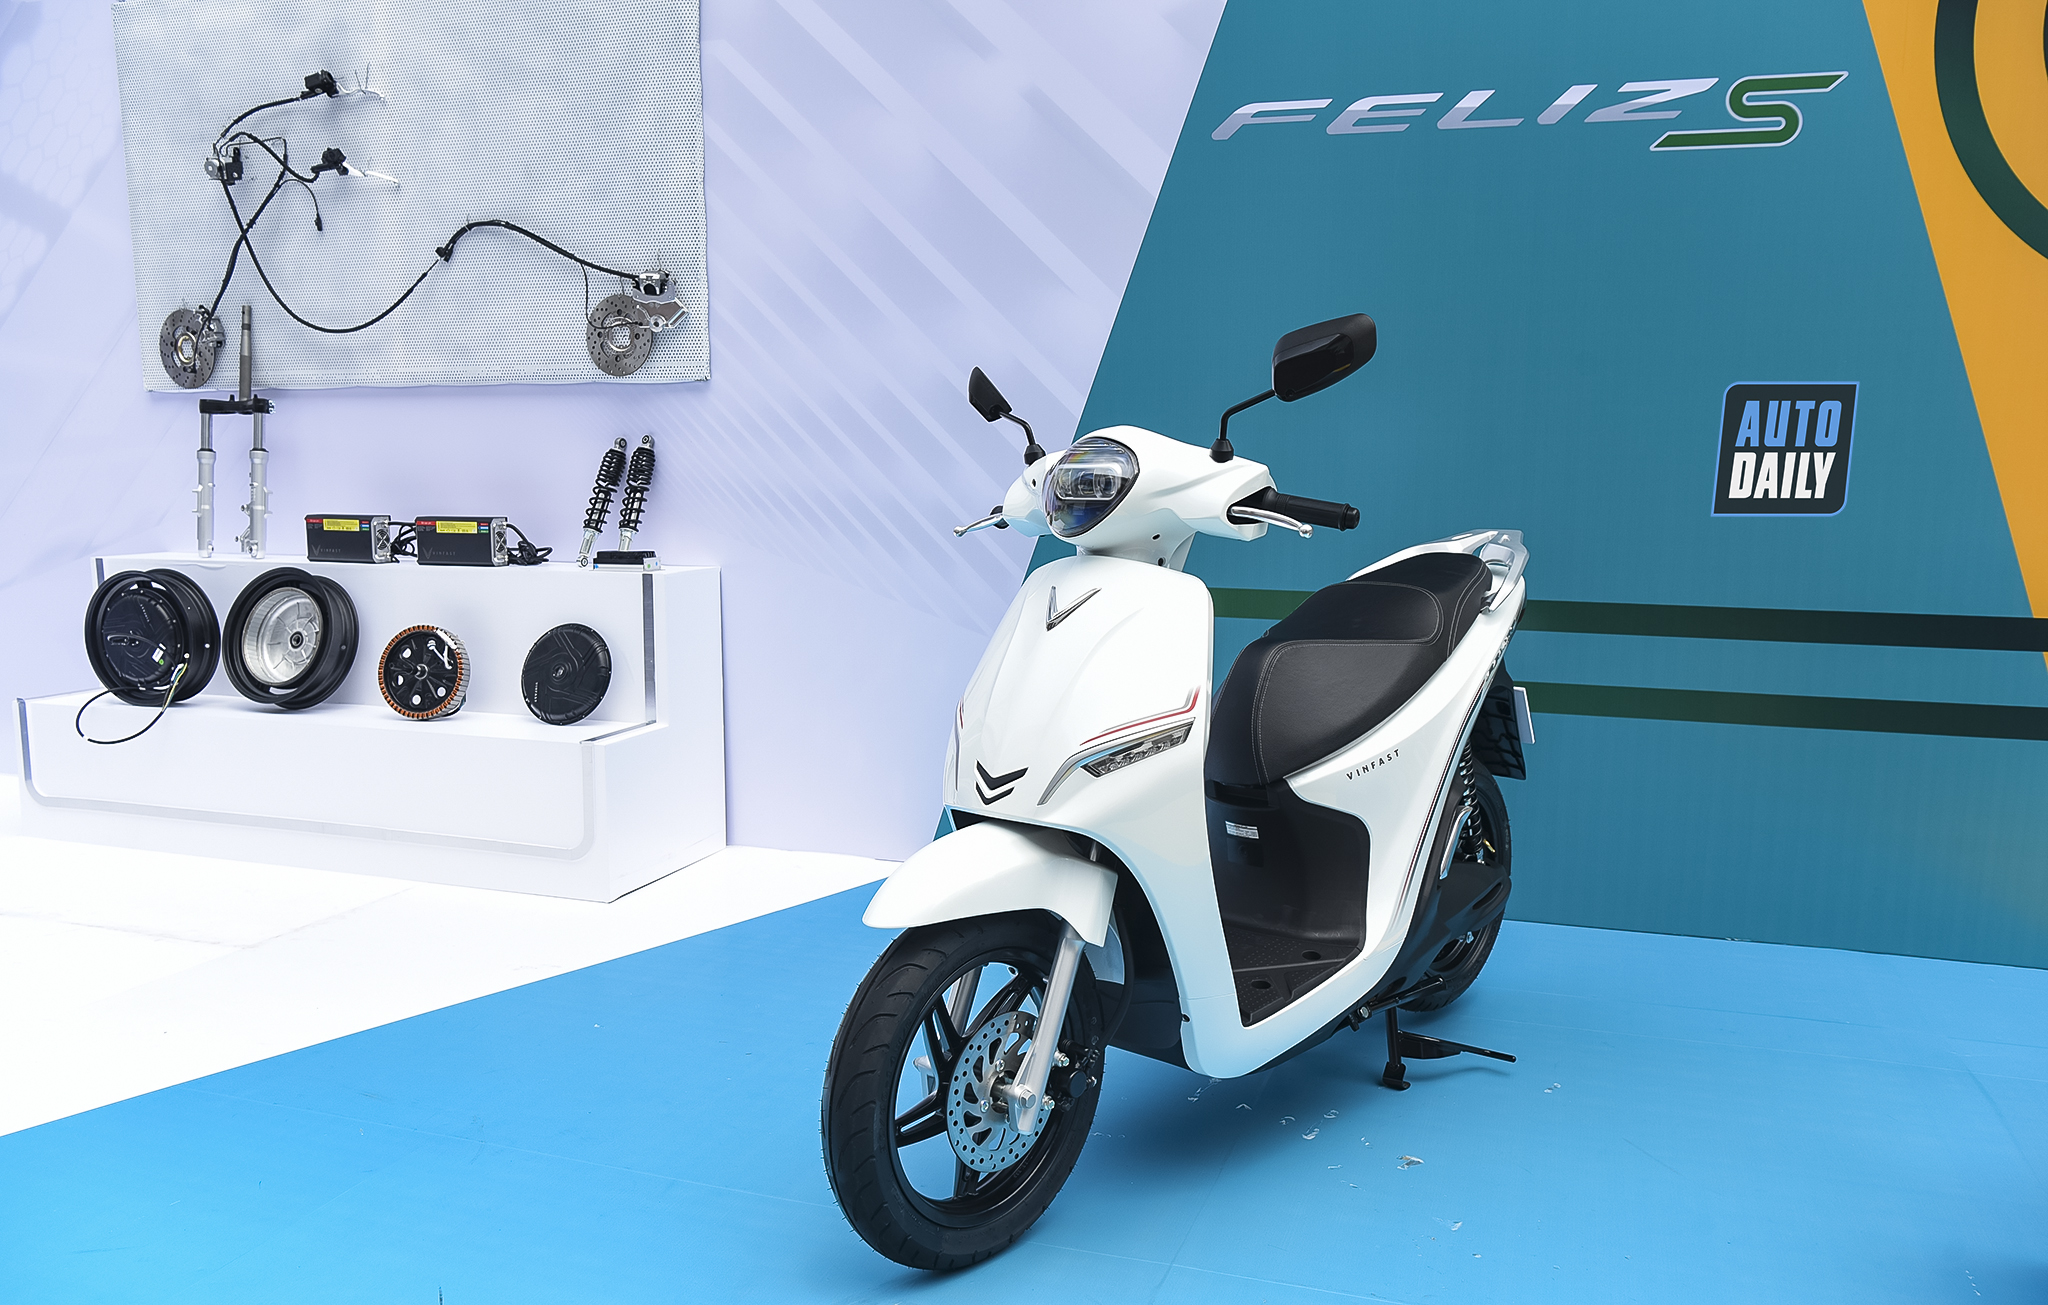 Điểm mặt xe máy điện trong tầm giá dưới 30 triệu đồng đáng cân nhắc VinFast Feliz S.jpg